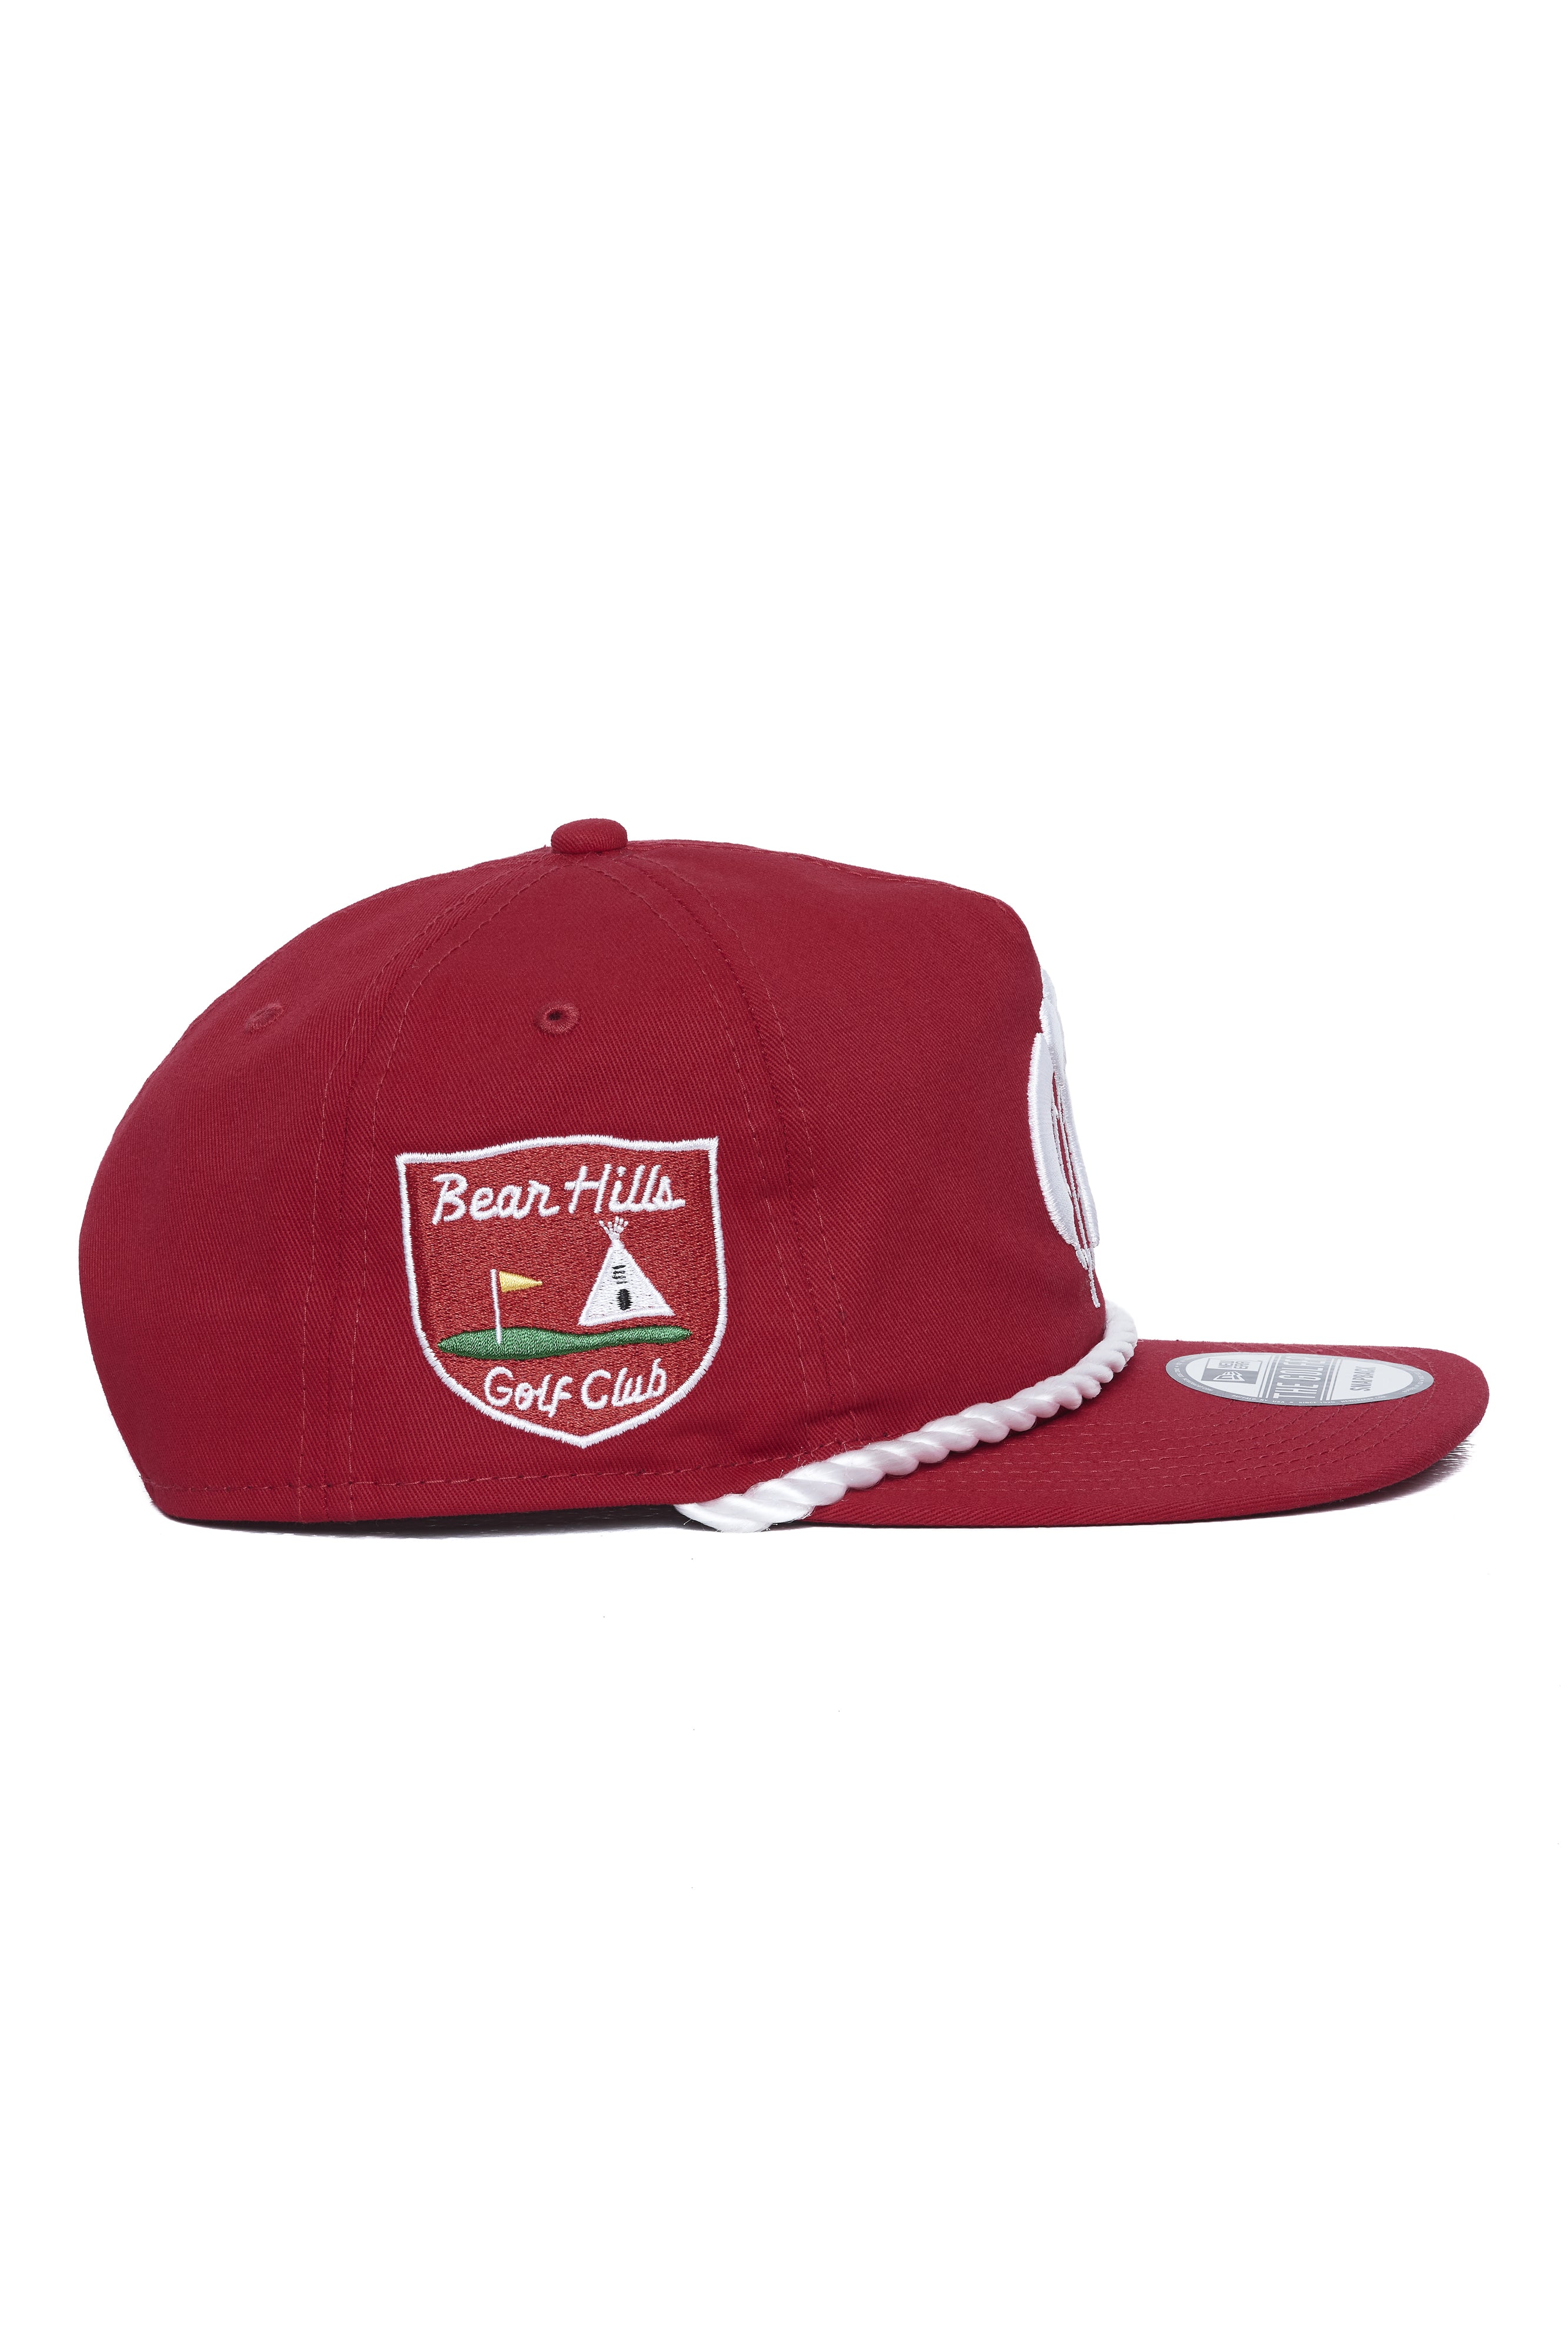 New Era BHGC Golfer Hat - Red